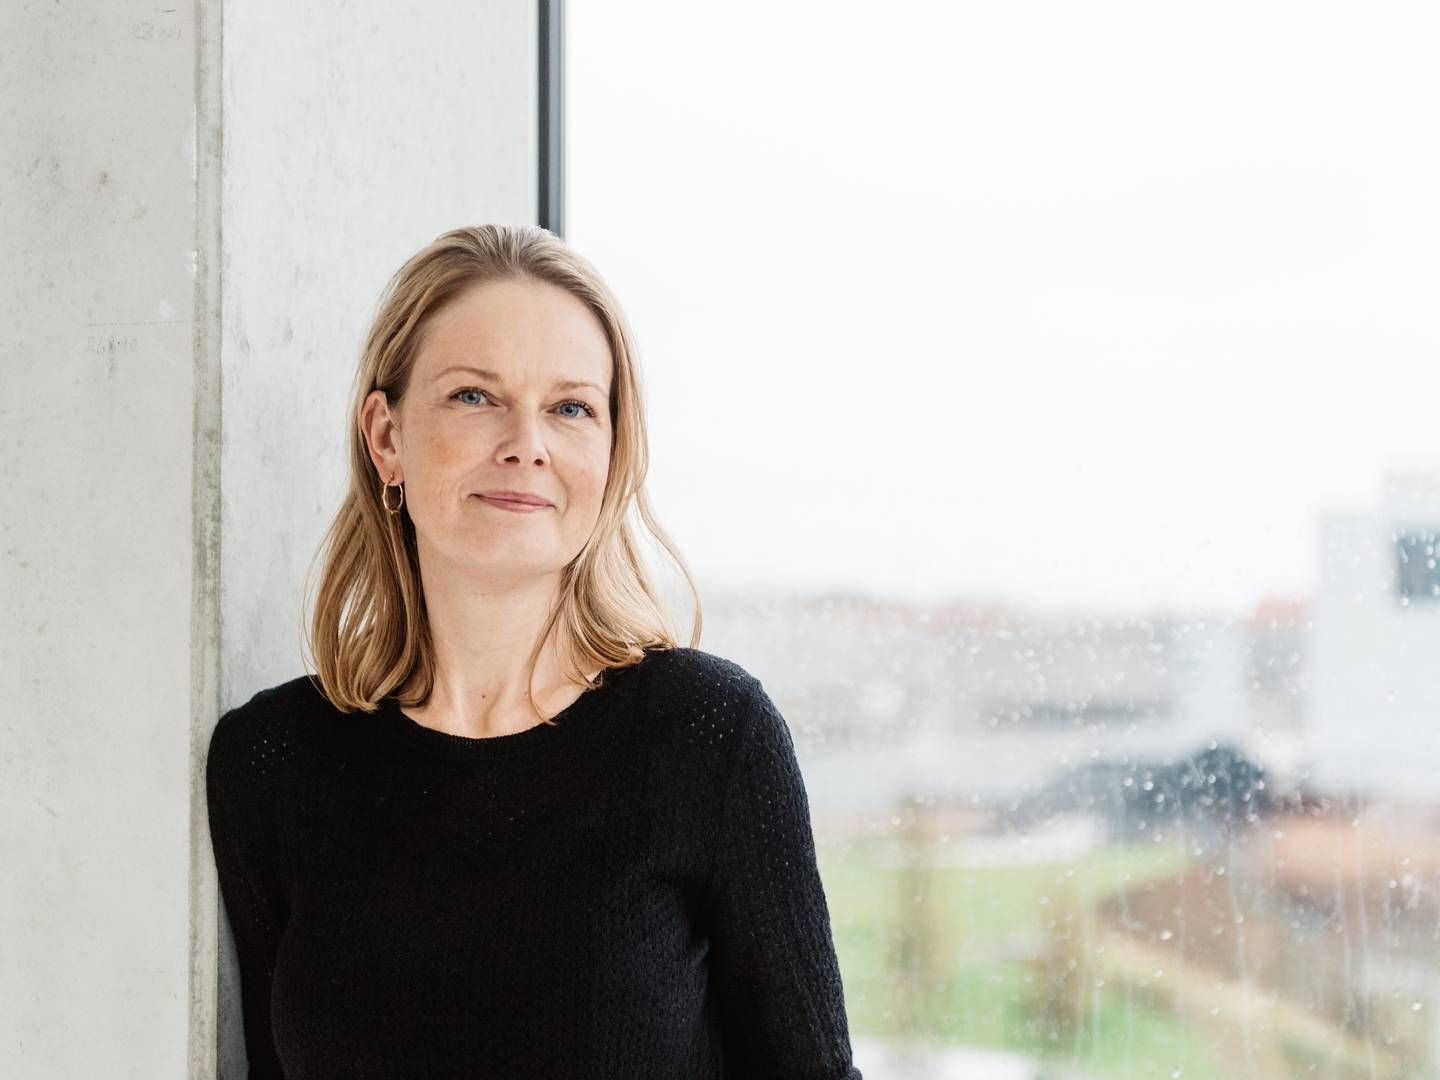 Hanne Salomonsen har siddet på direktørposten i Gyldendal i godt og vel et år. Før det var hun direktør for Gyldendal Uddannelse. | Foto: Pr/gyldendal